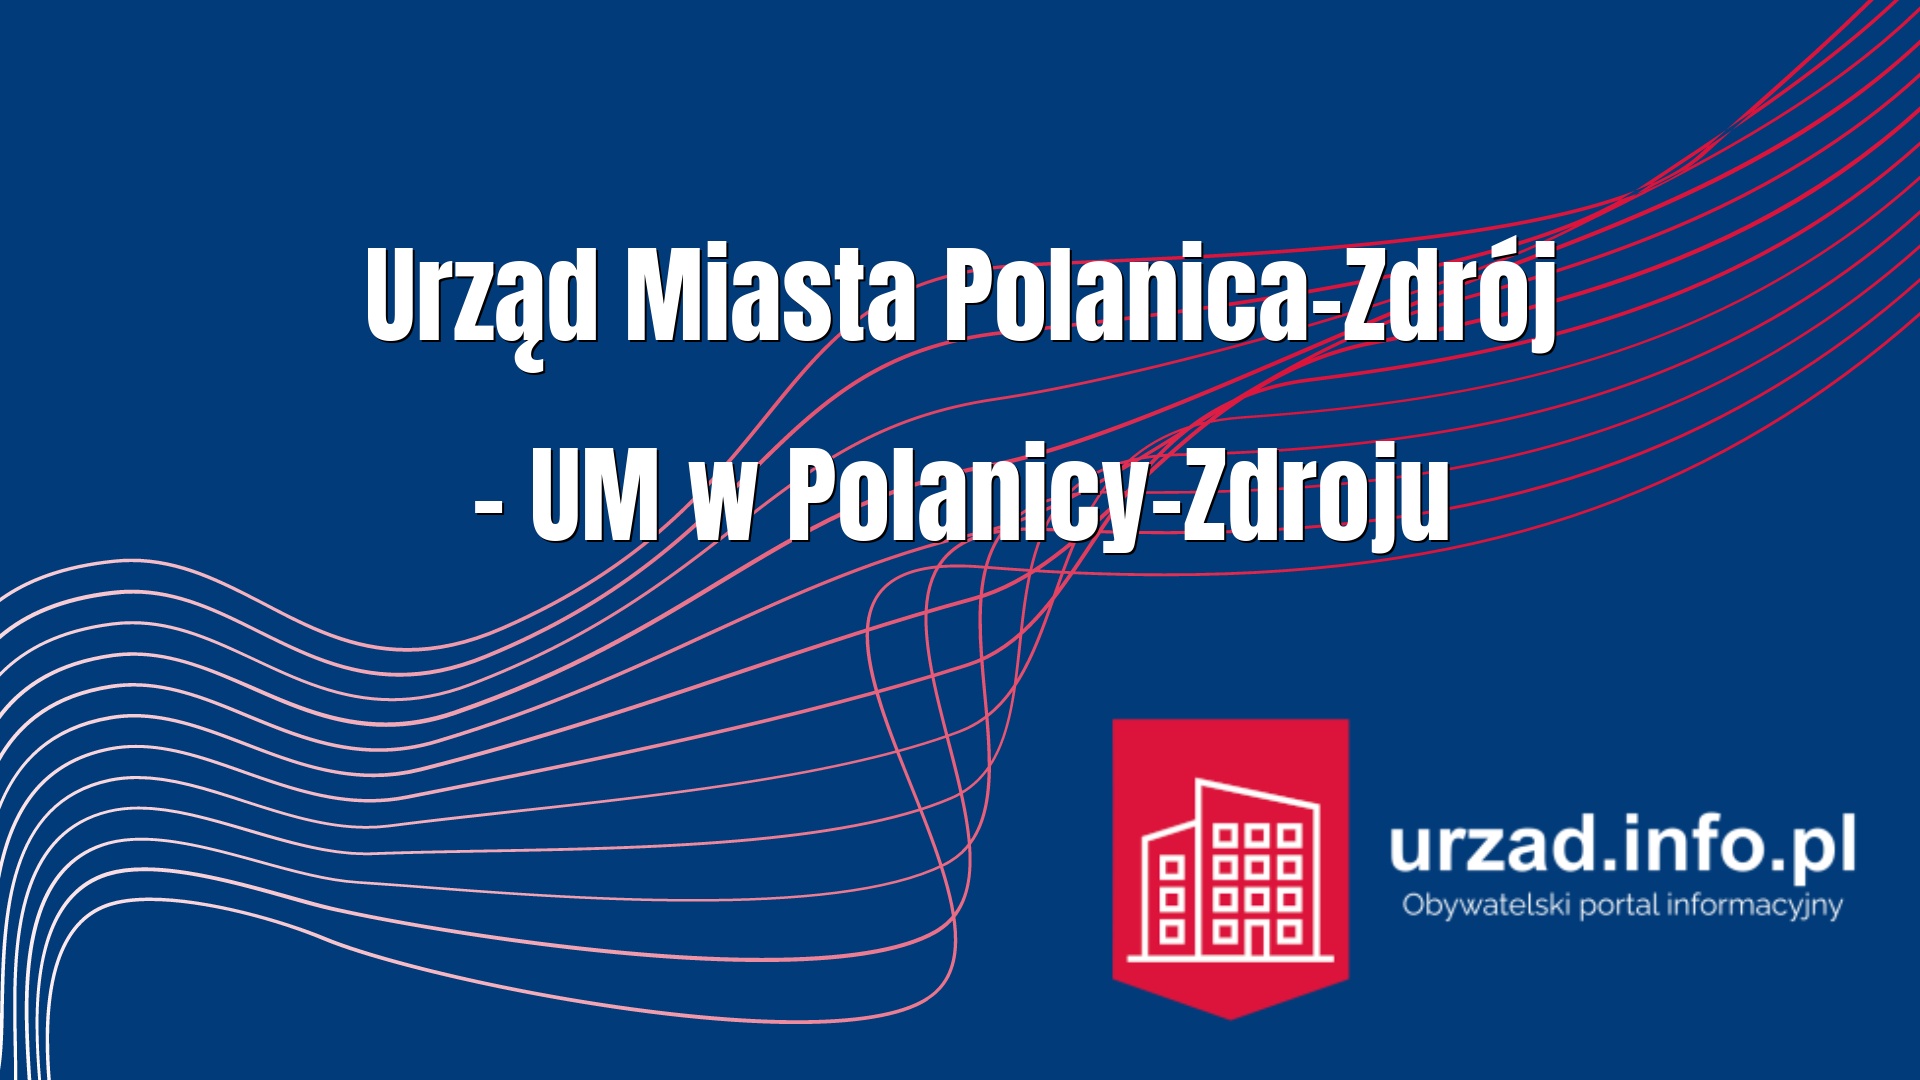 Urząd Miasta Polanica-Zdrój – UM w Polanicy-Zdroju